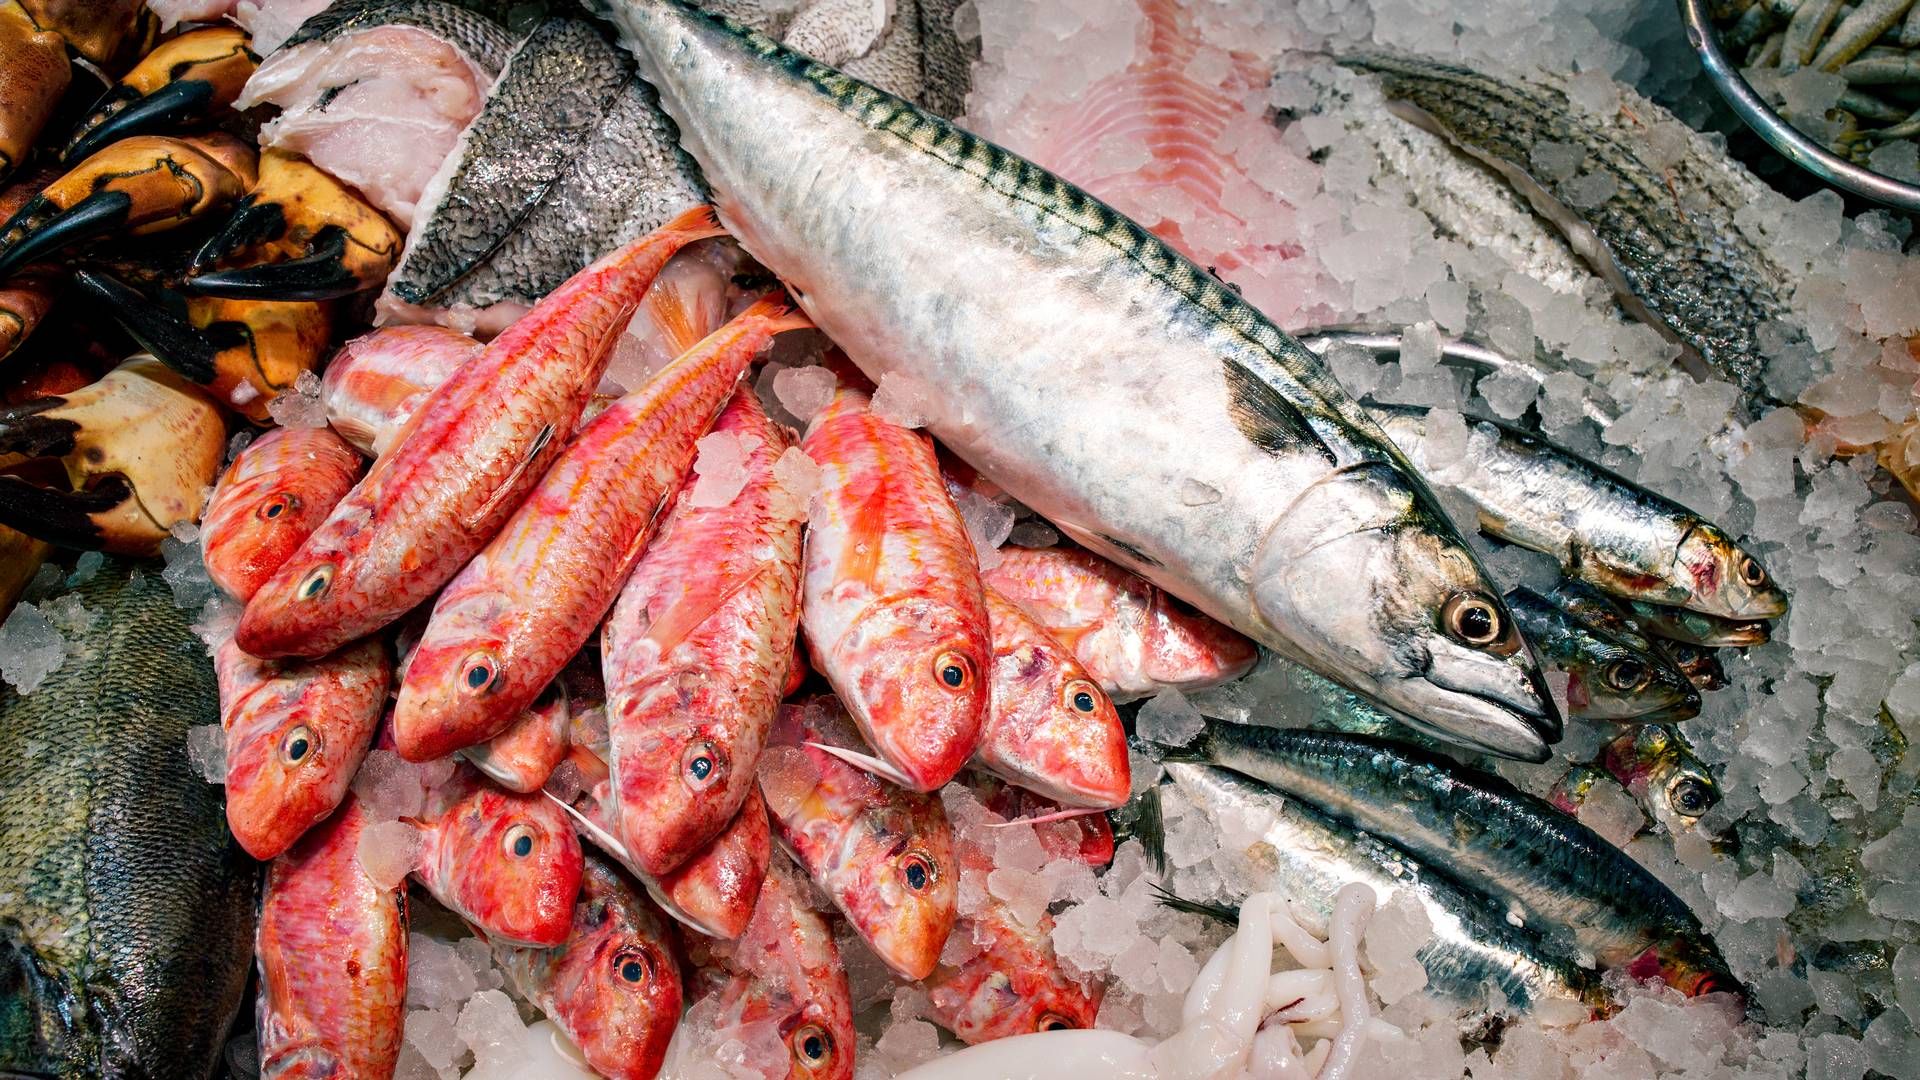 Kangamiut Seafood handler med fisk og skaldyr og er en del af den store, danske fiskekoncern Kangamiut Group. | Foto: Miriam Dalsgaard/Ritzau Scanpix.